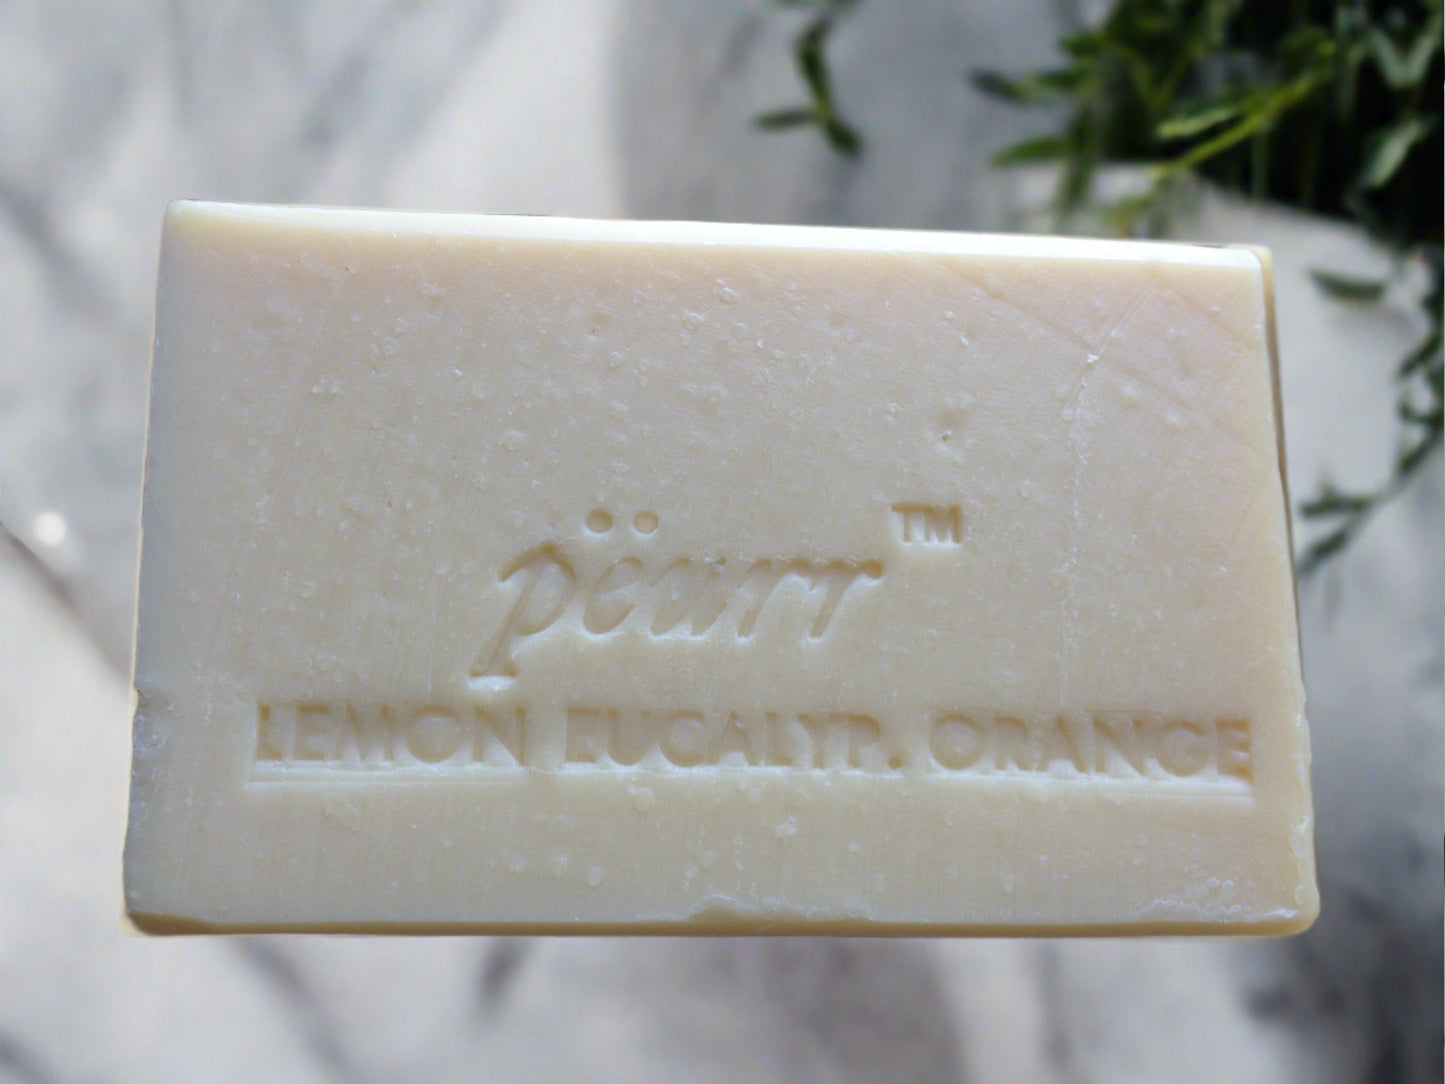 Lemon Eucalyptus & Orange Goat Milk & Olive Oil Soap